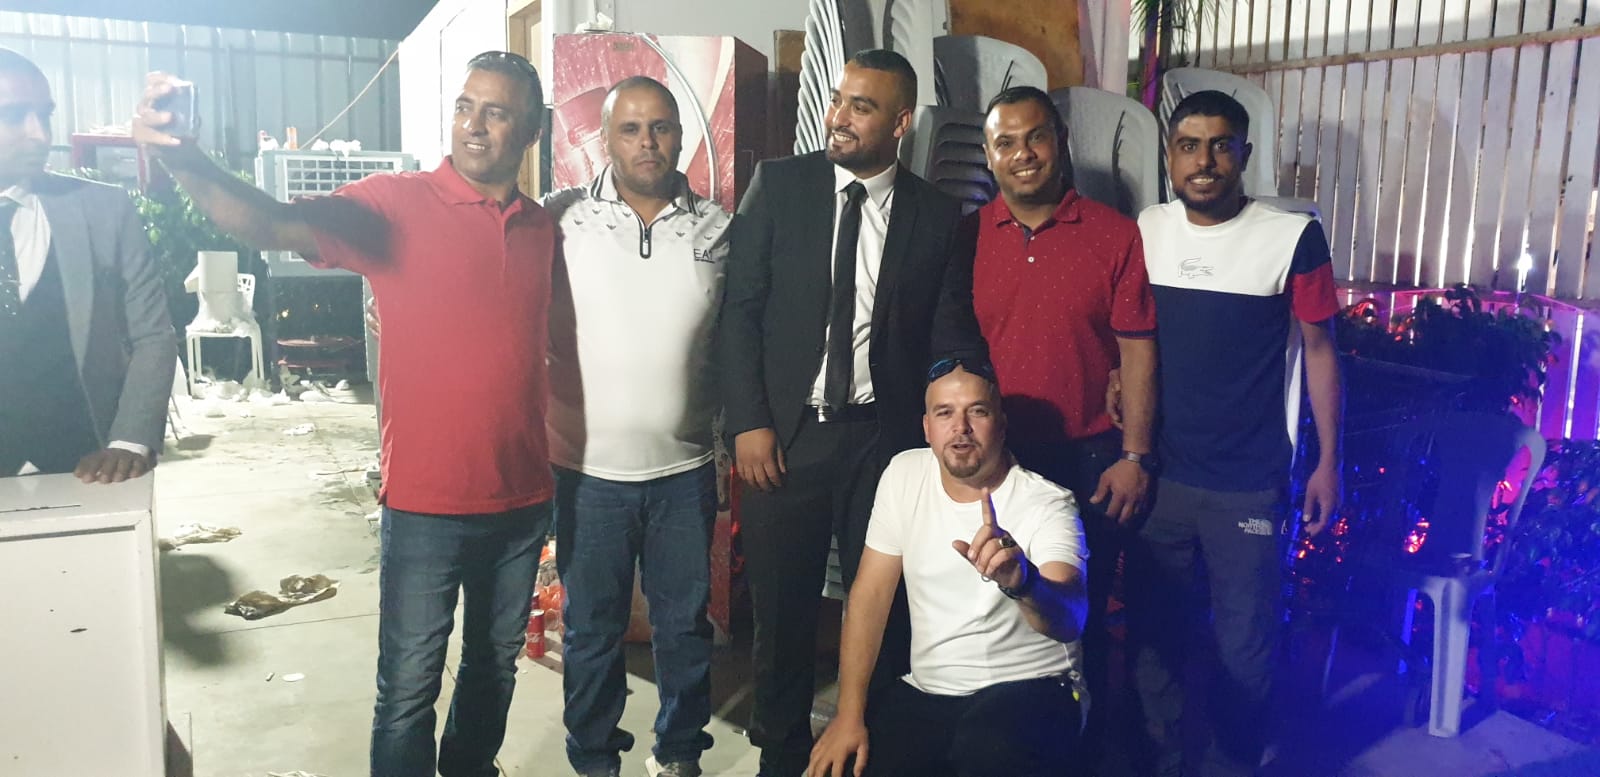 اجتماعيات - بالصور: حفل زفاف العريس يوسف أبو معمر في مدينة الرملة